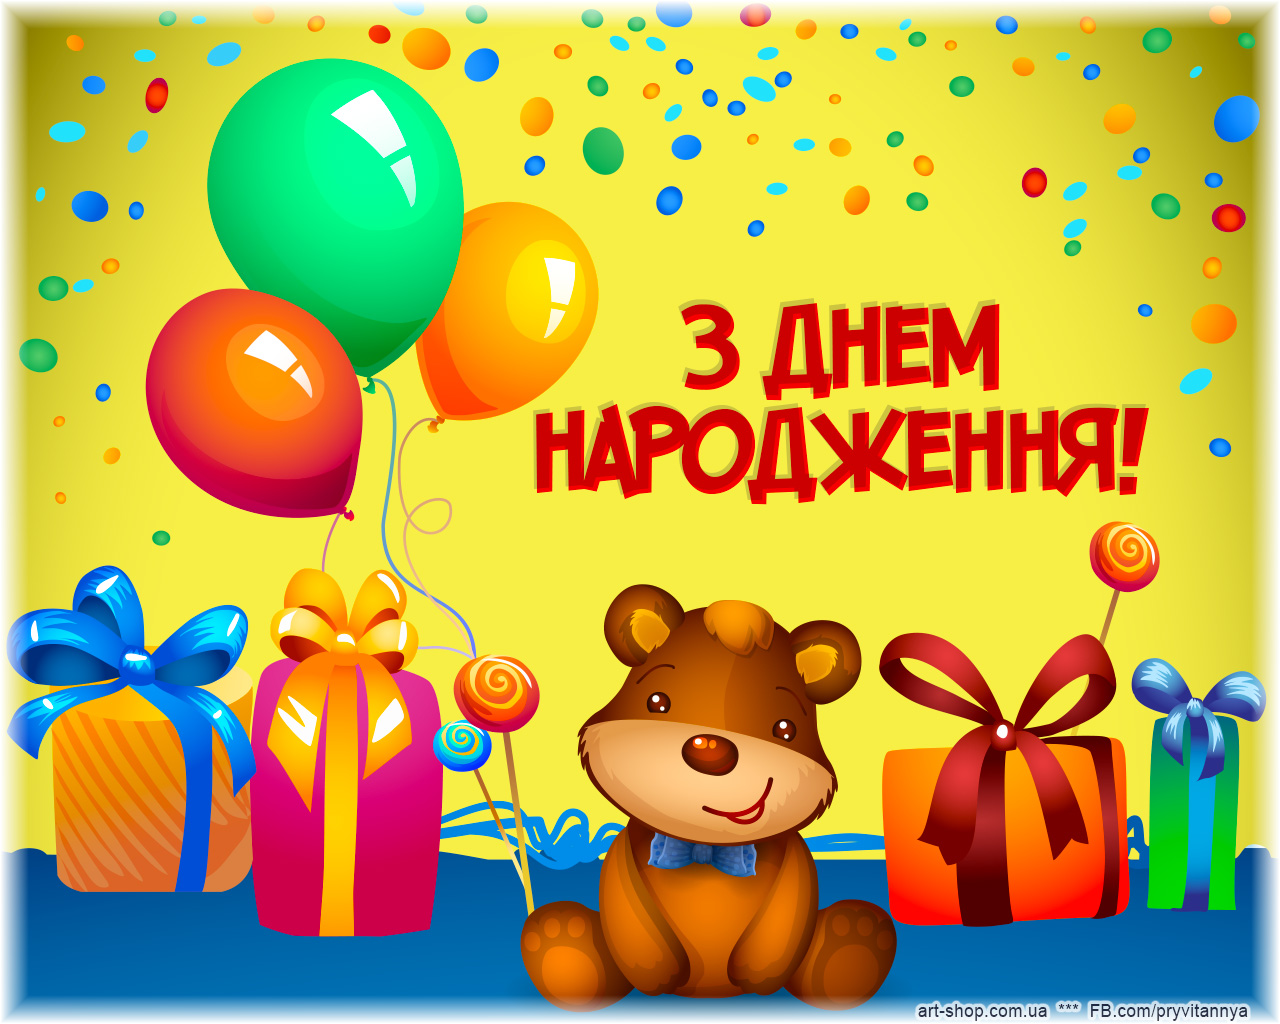 З днем народження своїми словами. С днем народження. З днем народження для дитини. Поздравление с днем рождения на украинском. З днем народження картинки.